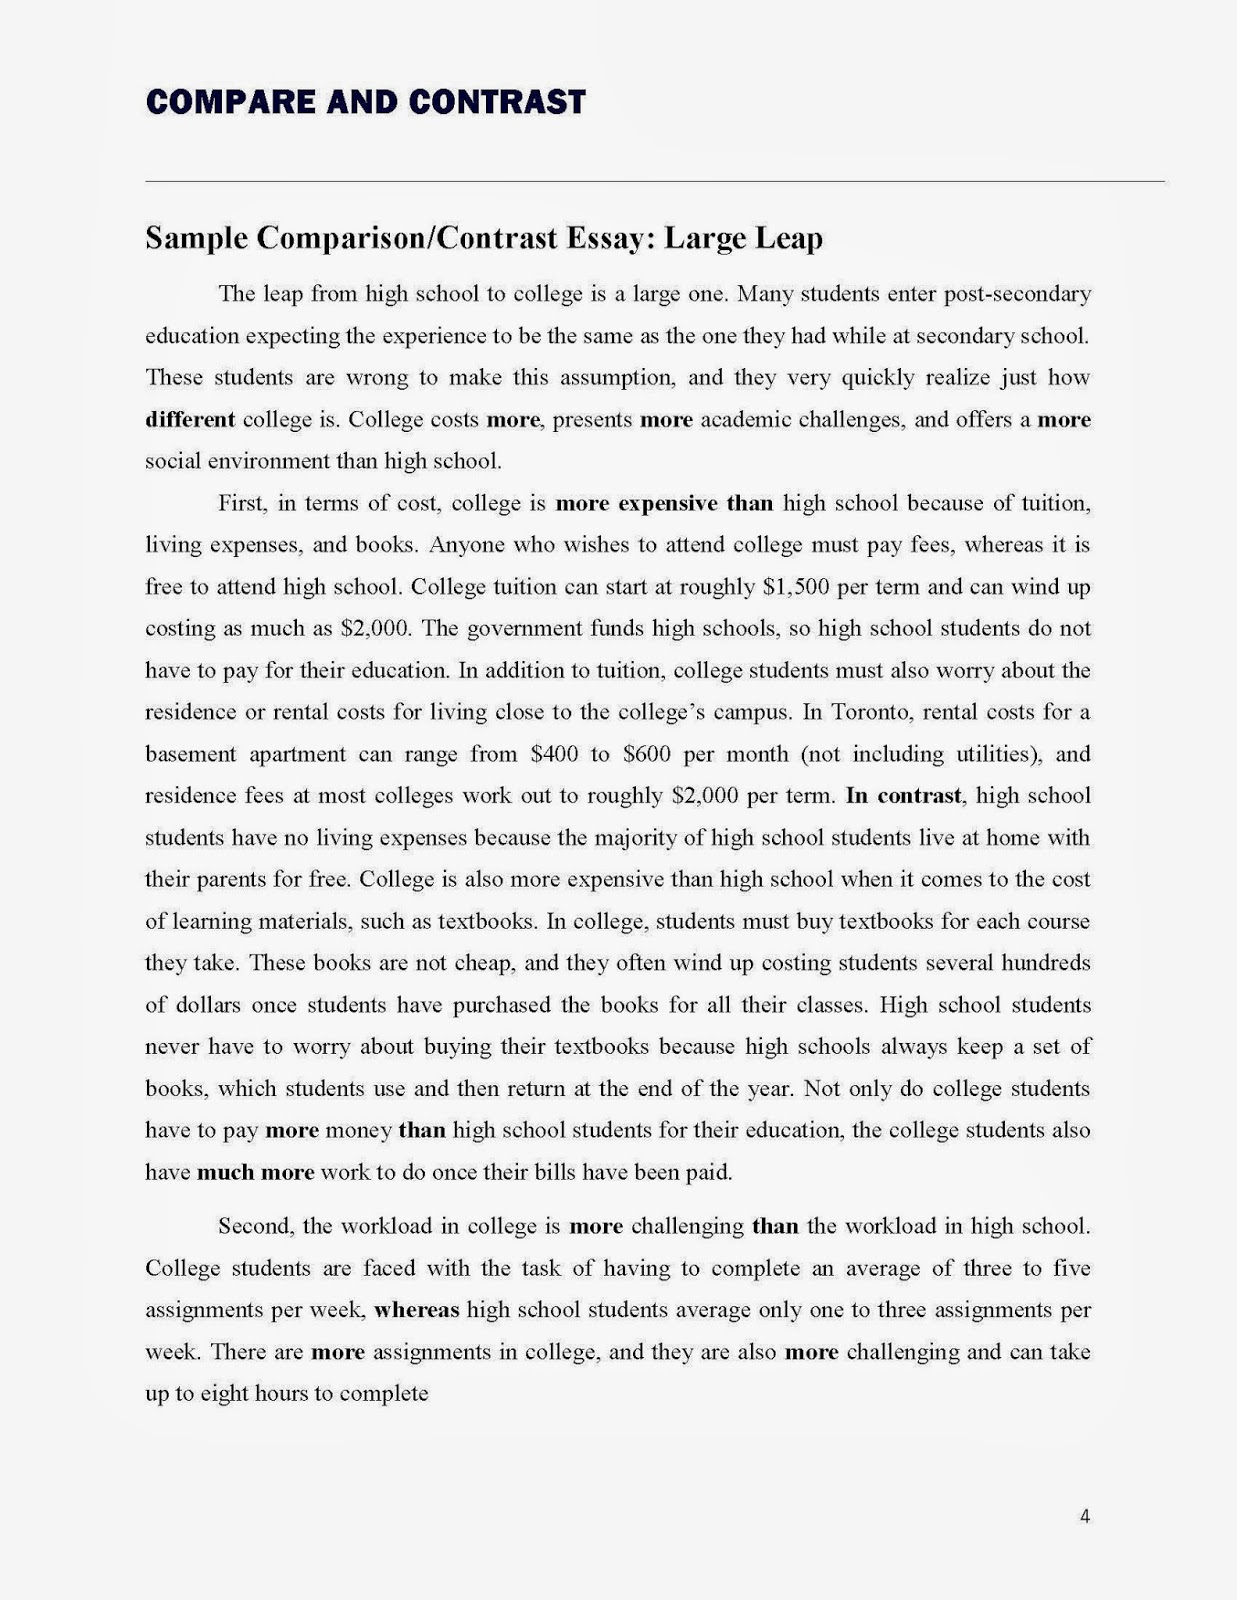 Topics for contrast essay